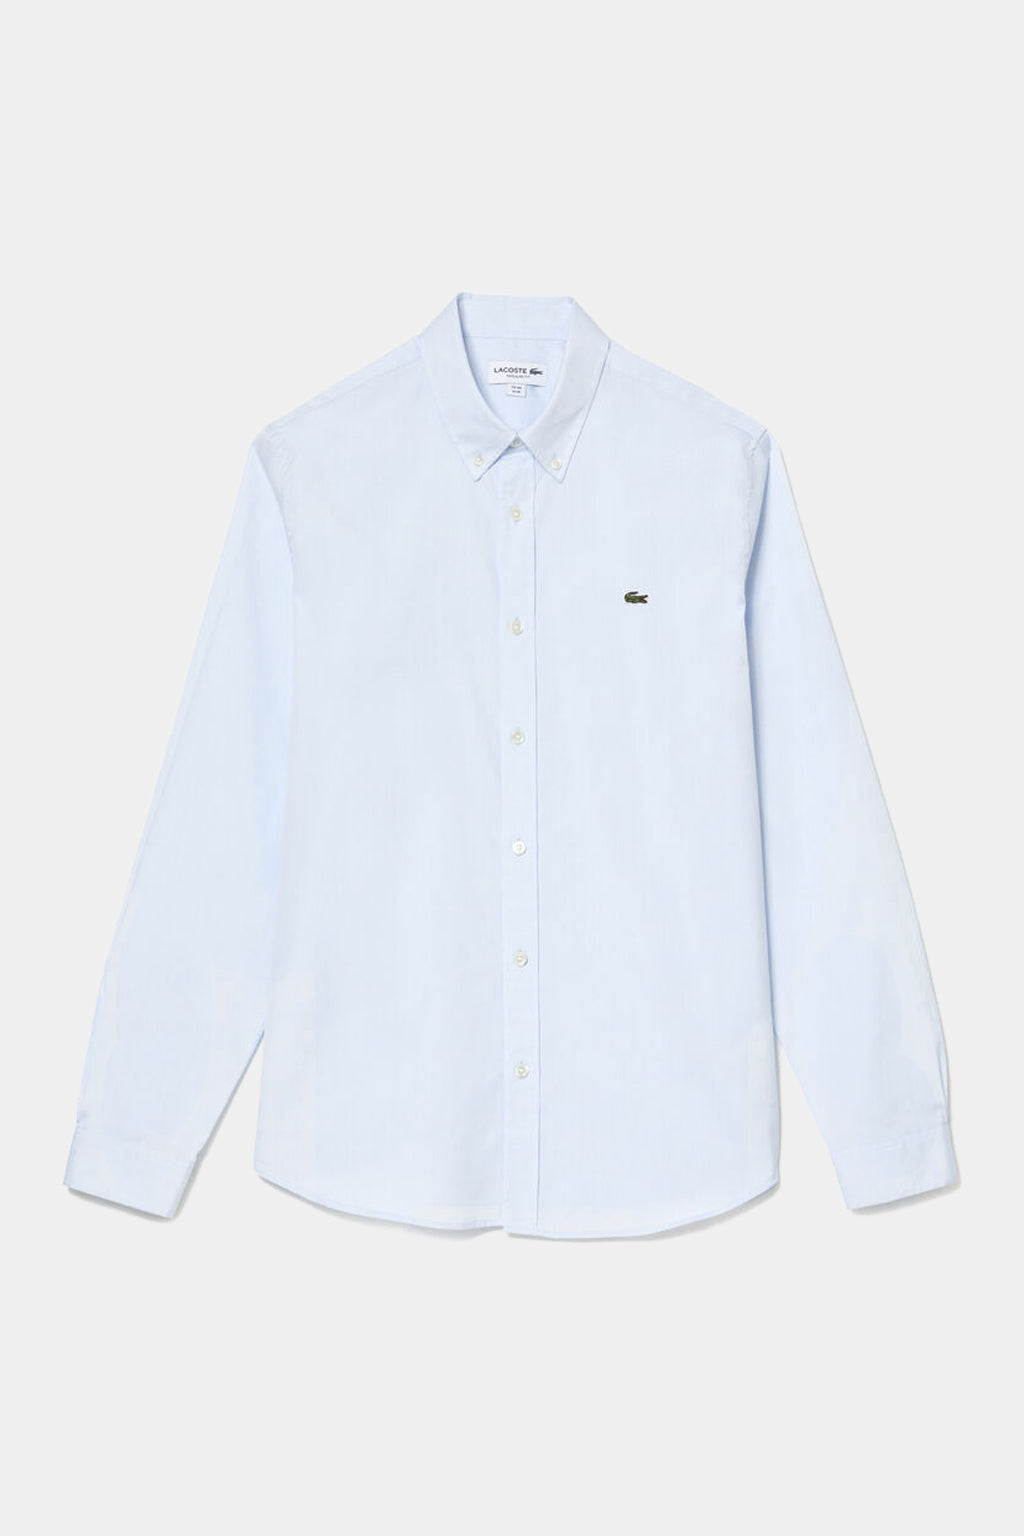 Lacoste - Men's Regular Fit Premium Cotton Shirt